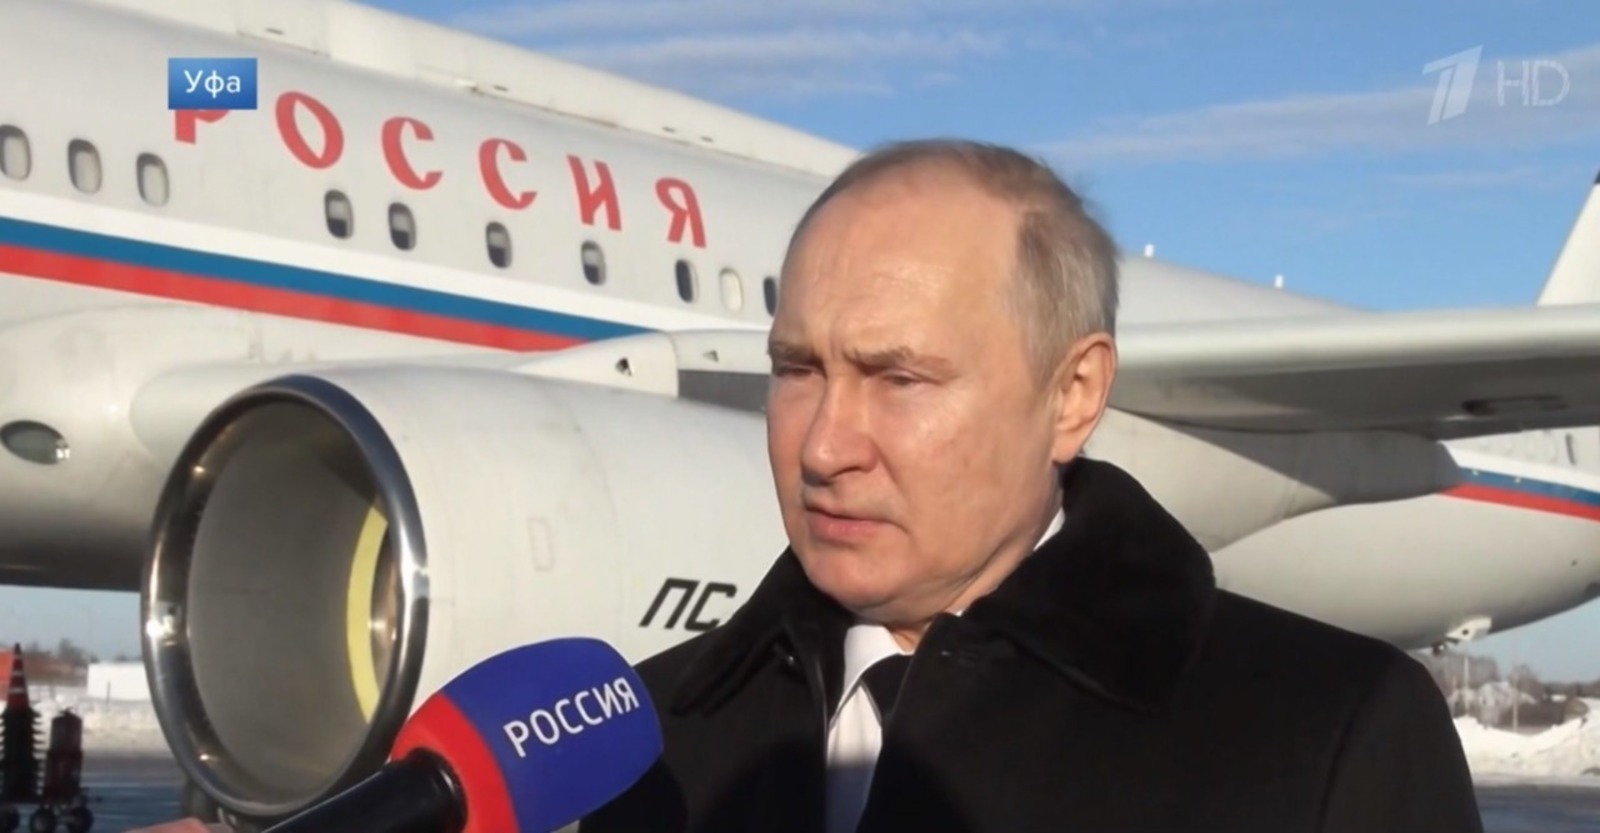 Федеральные политологи прокомментировали визит Владимира Путина в Уфу